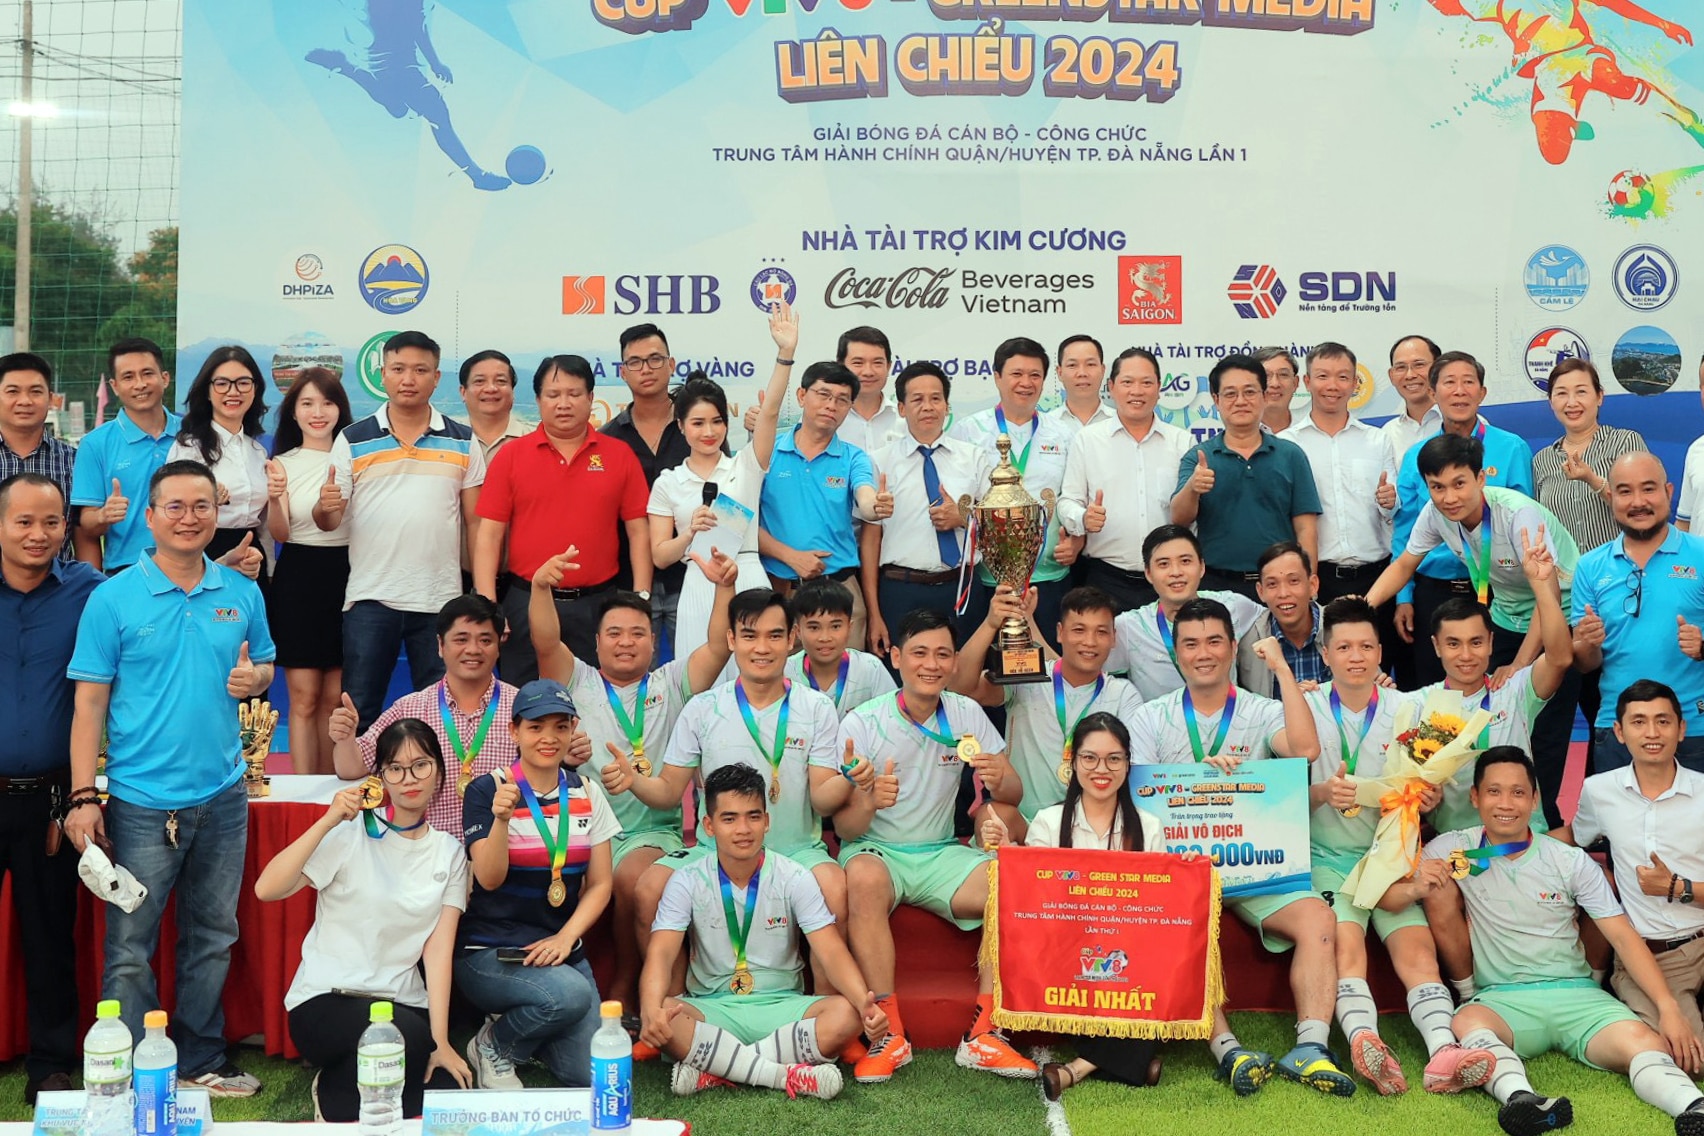 Мужская футбольная команда Х. Хоа Ванга выиграла чемпионат первого сезона.